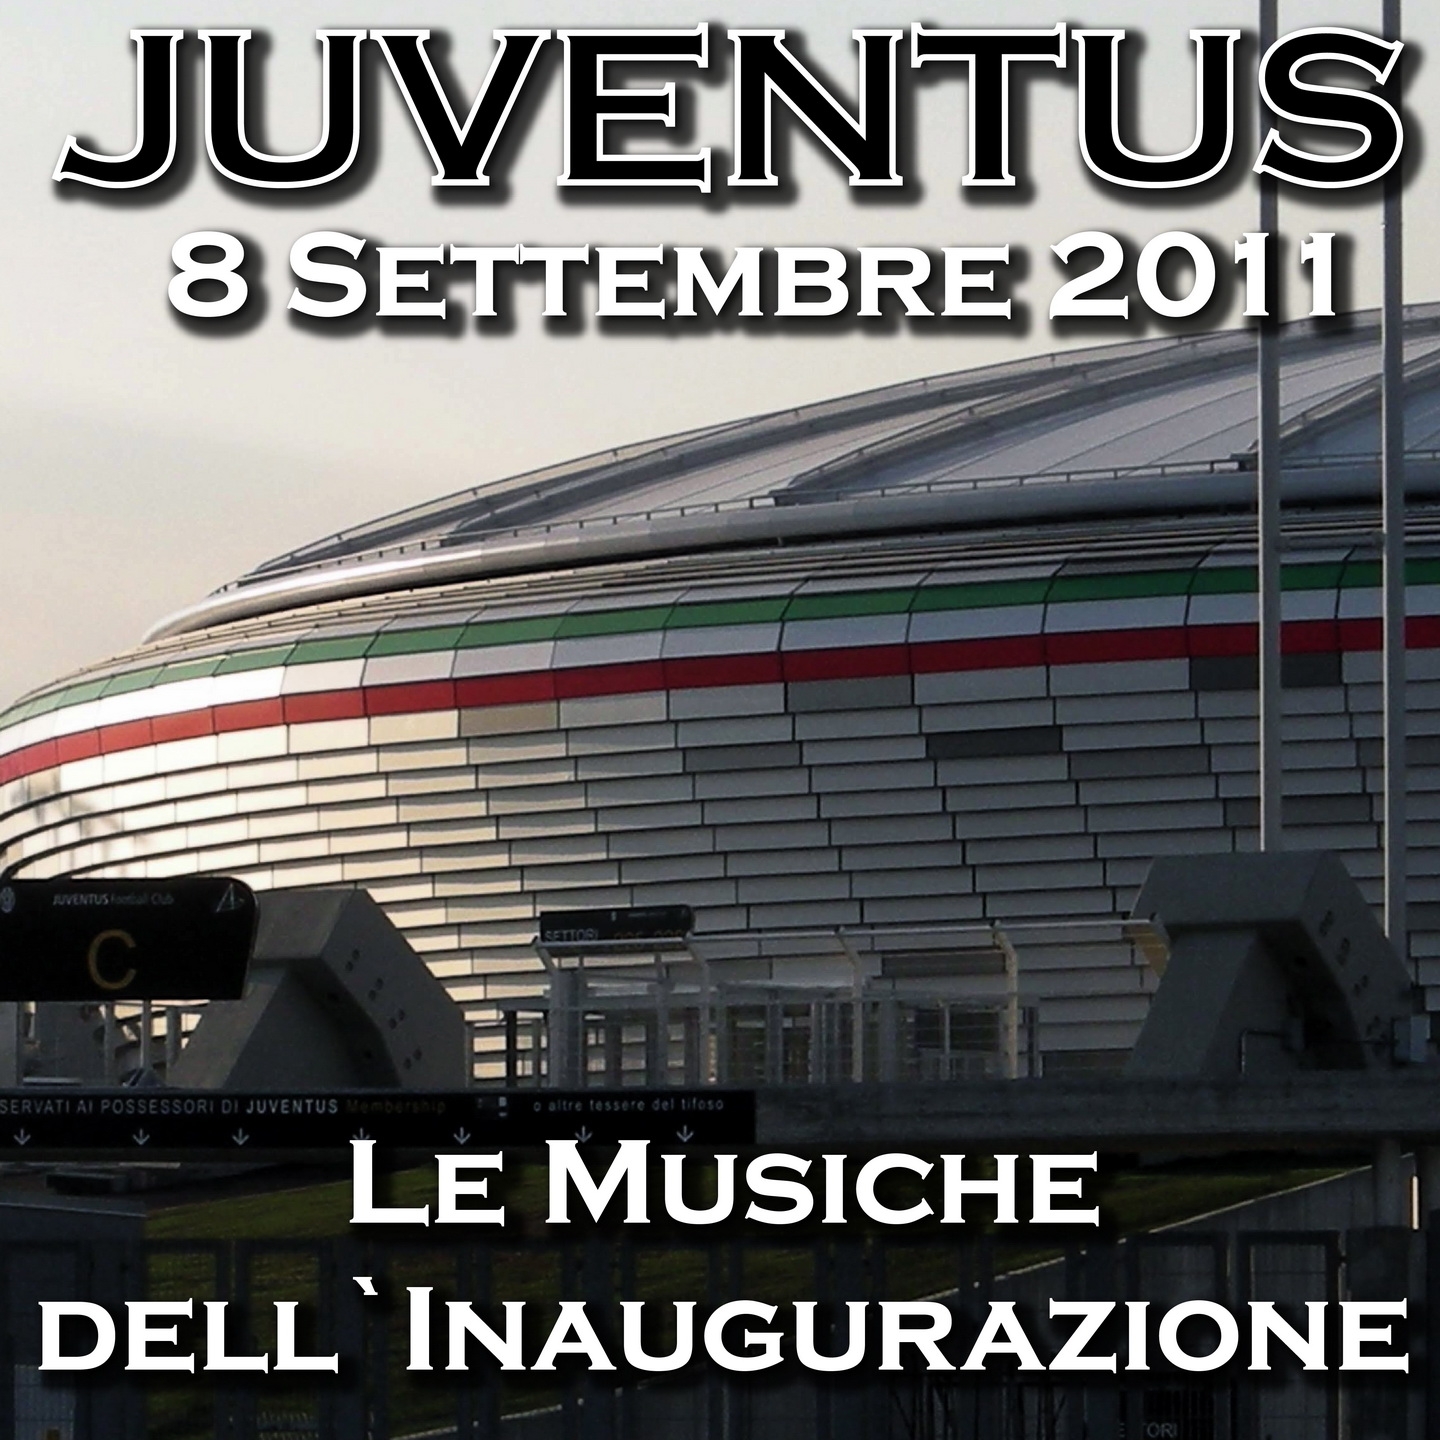 Juventus 8 Settembre 2011: Le musiche dell'inaugurazione